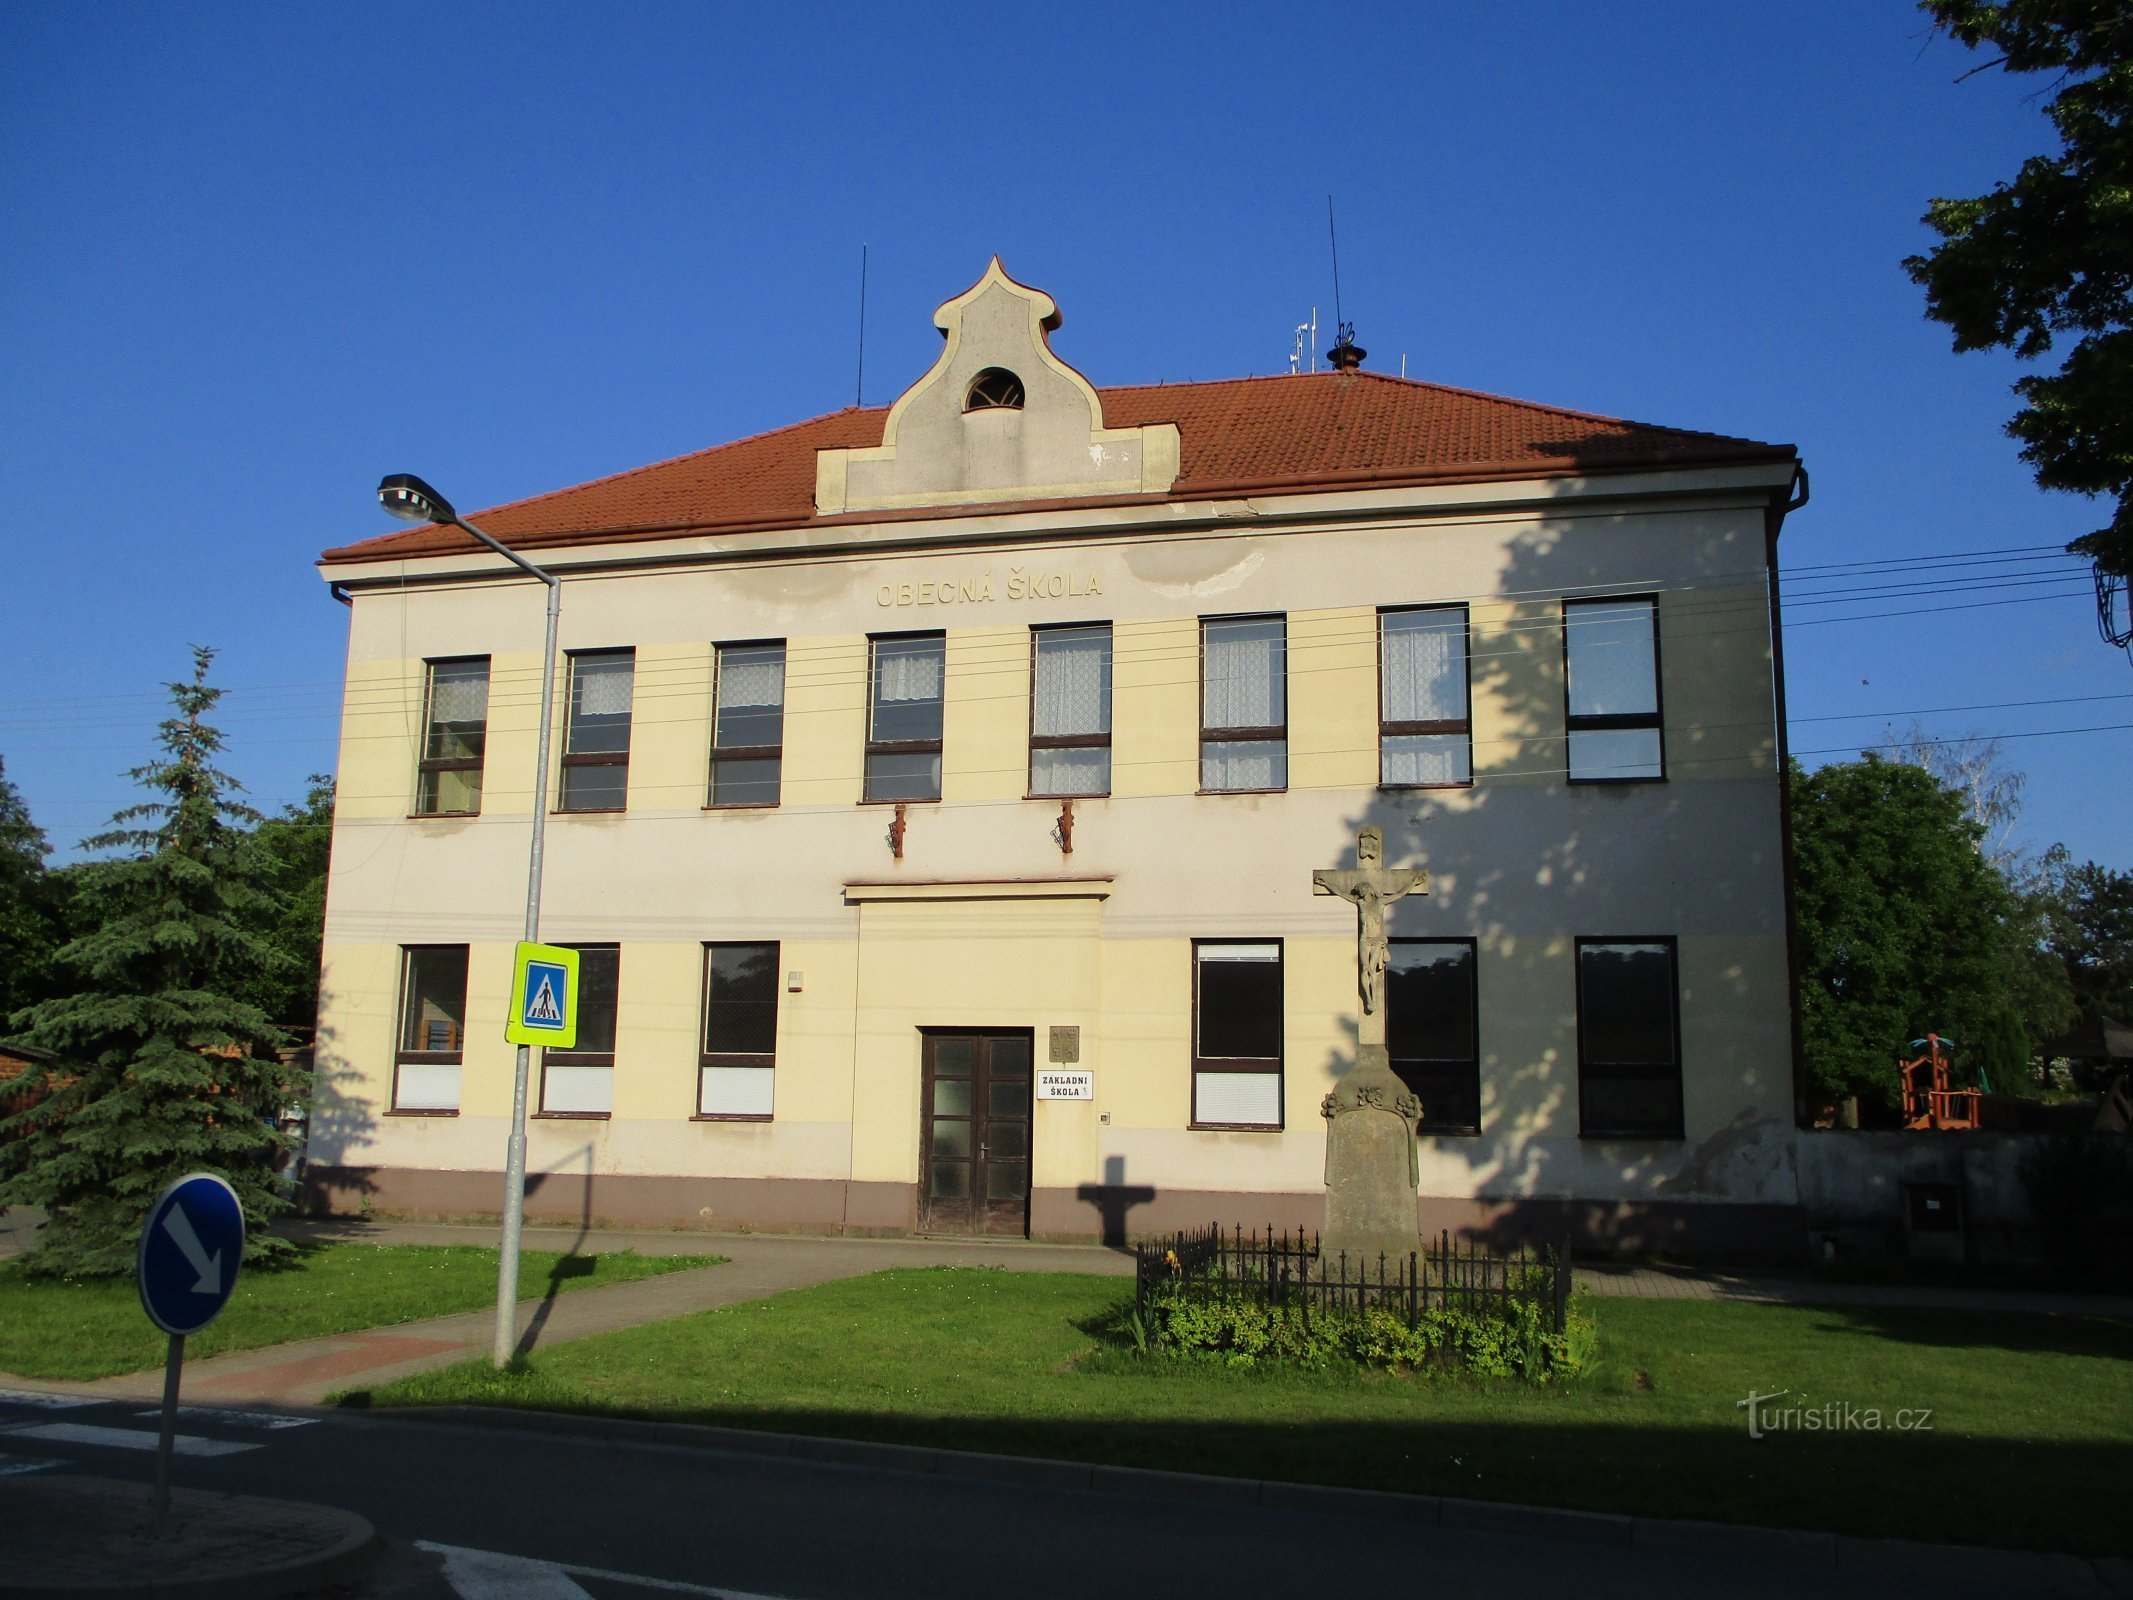 Școală (Dobřenice, 7.6.2019 iunie XNUMX)